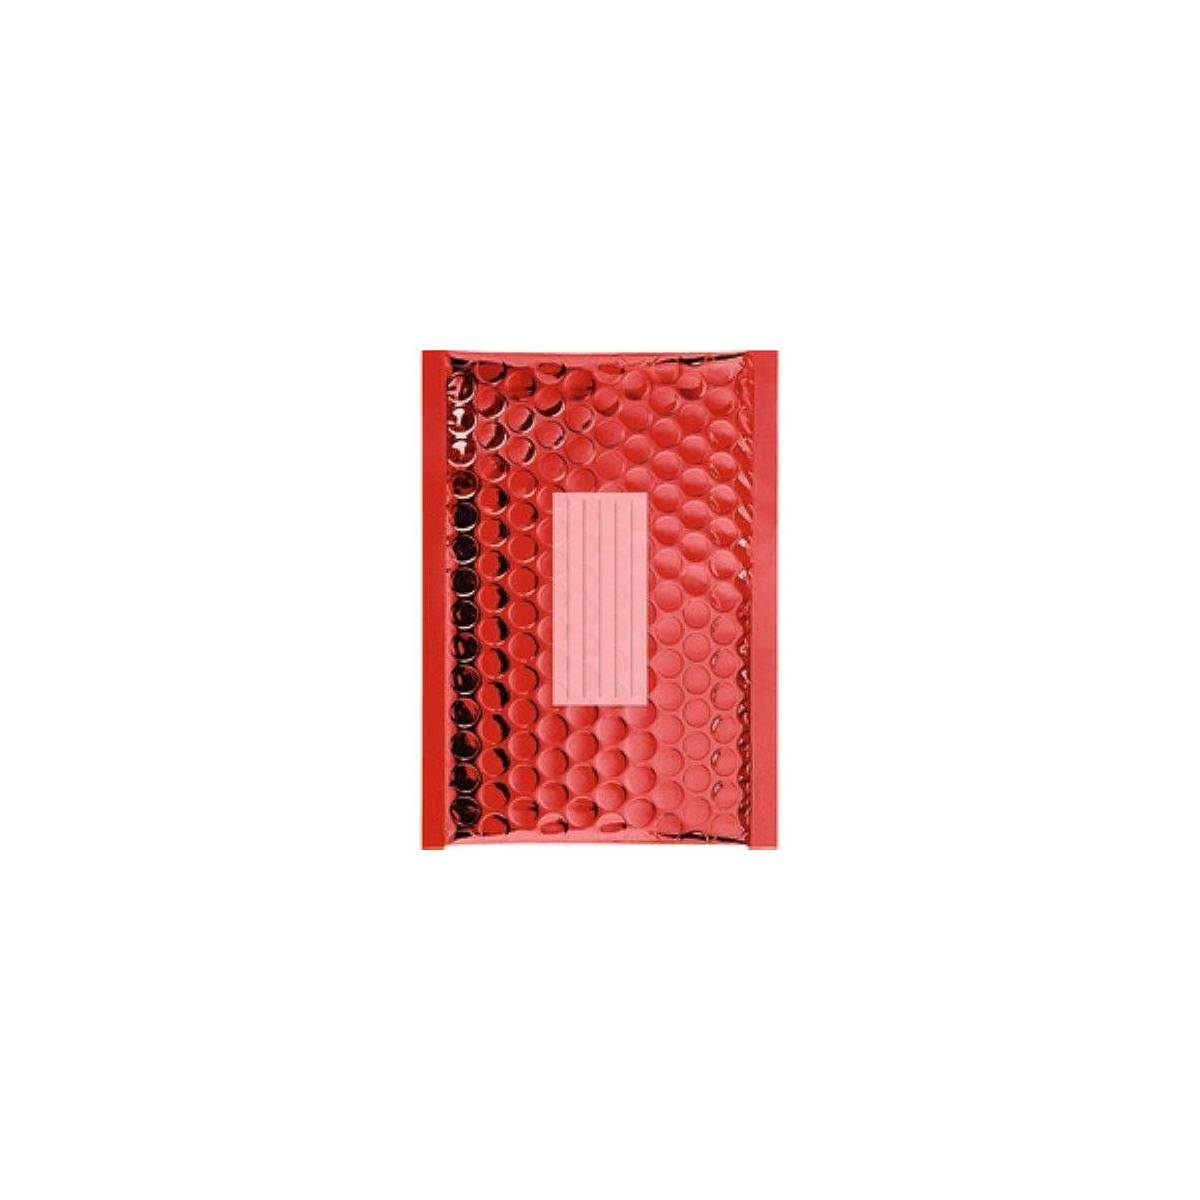 100 Enveloppes à Bulles Métalisées - 210X150 mm - C/0 - Qualité Premium (Red)